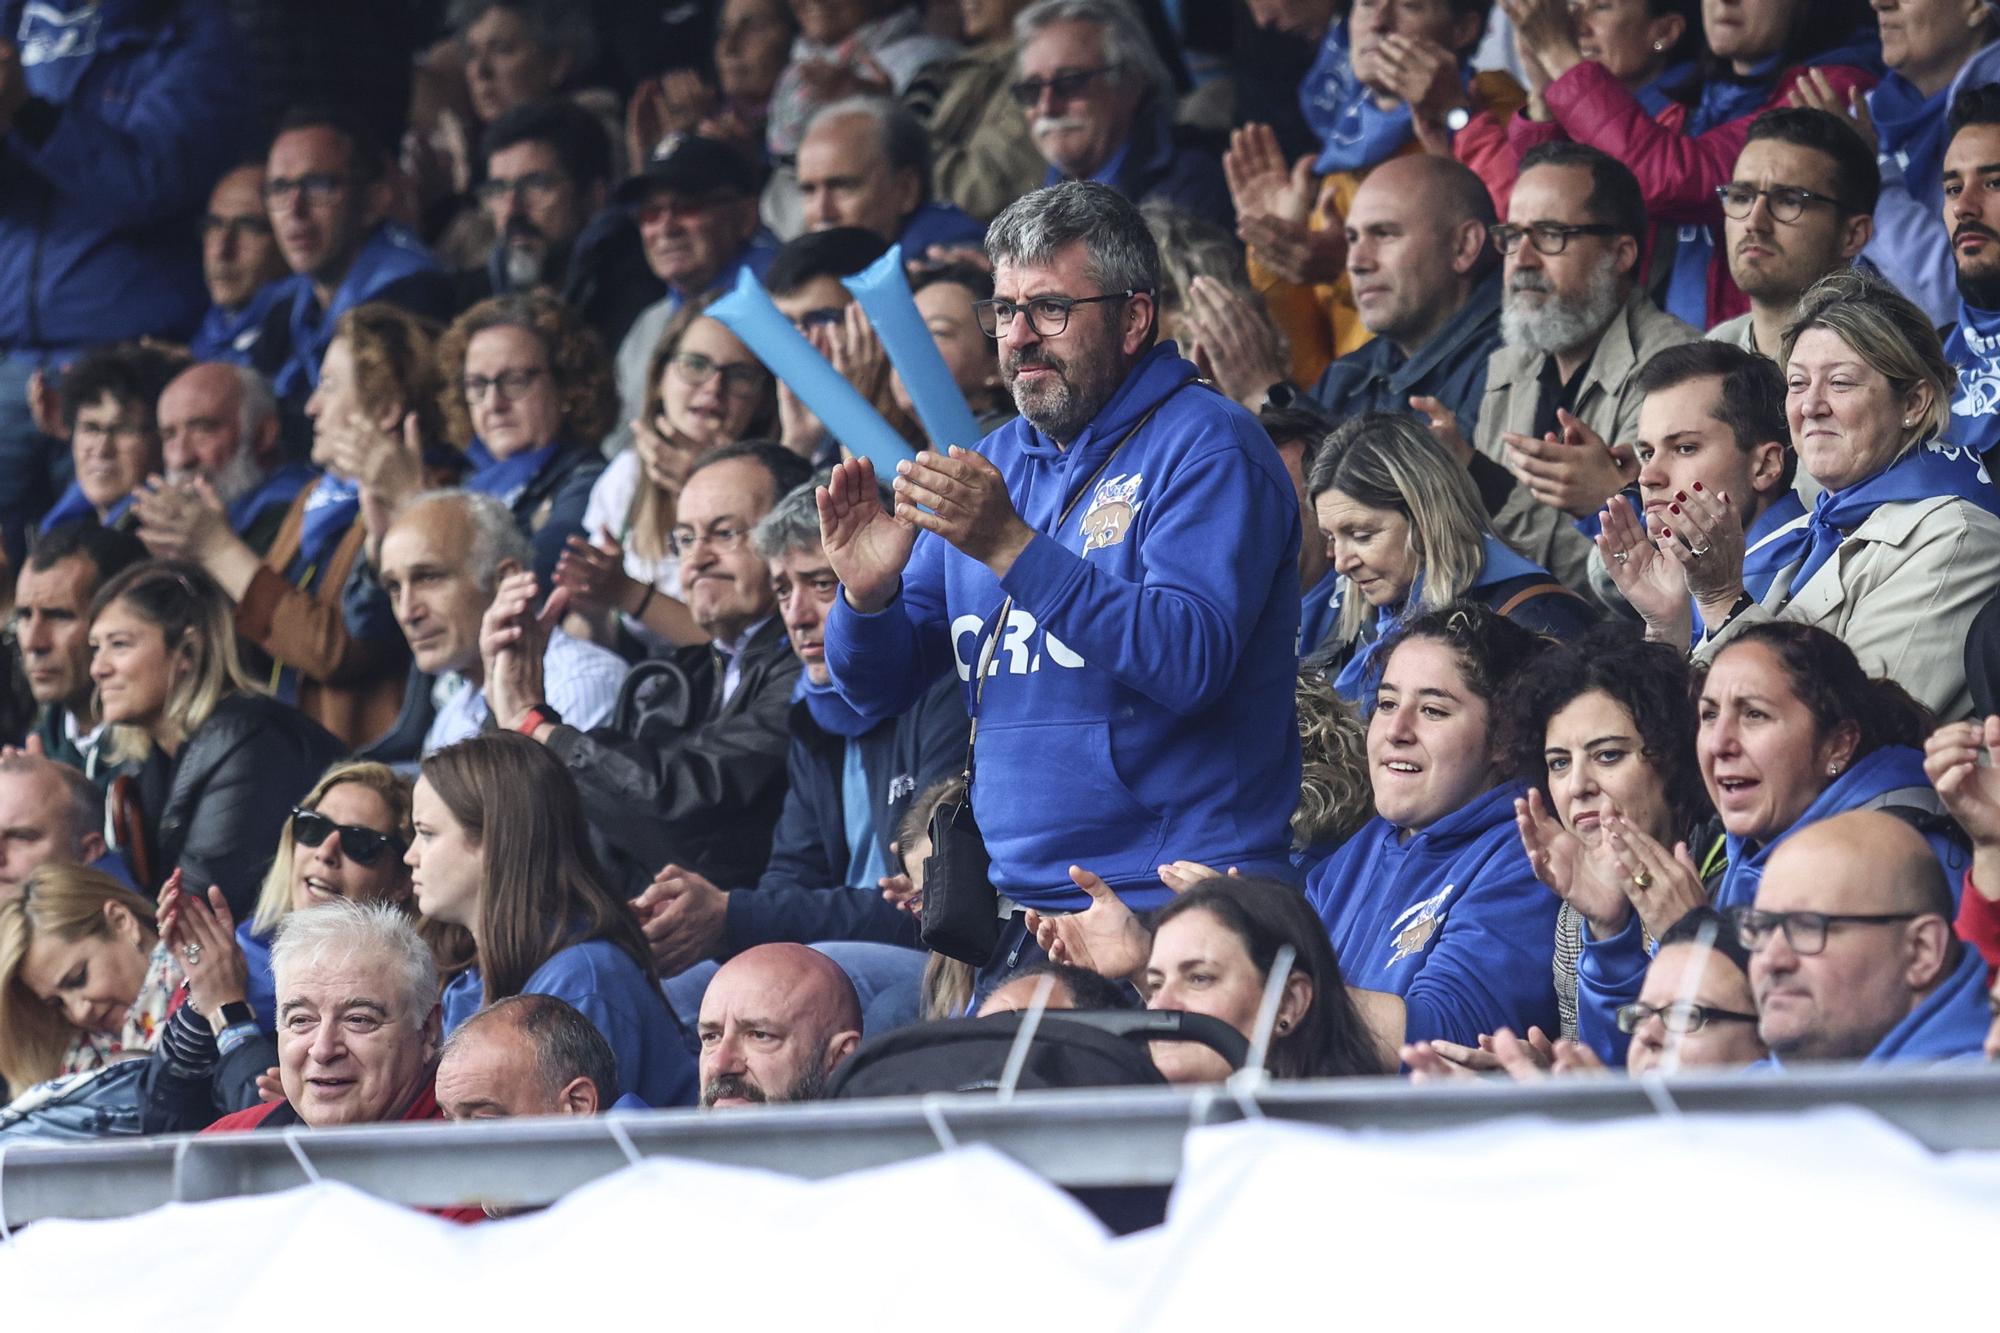 Fiesta del Real Oviedo Rugby tras ascender a División de Honor B